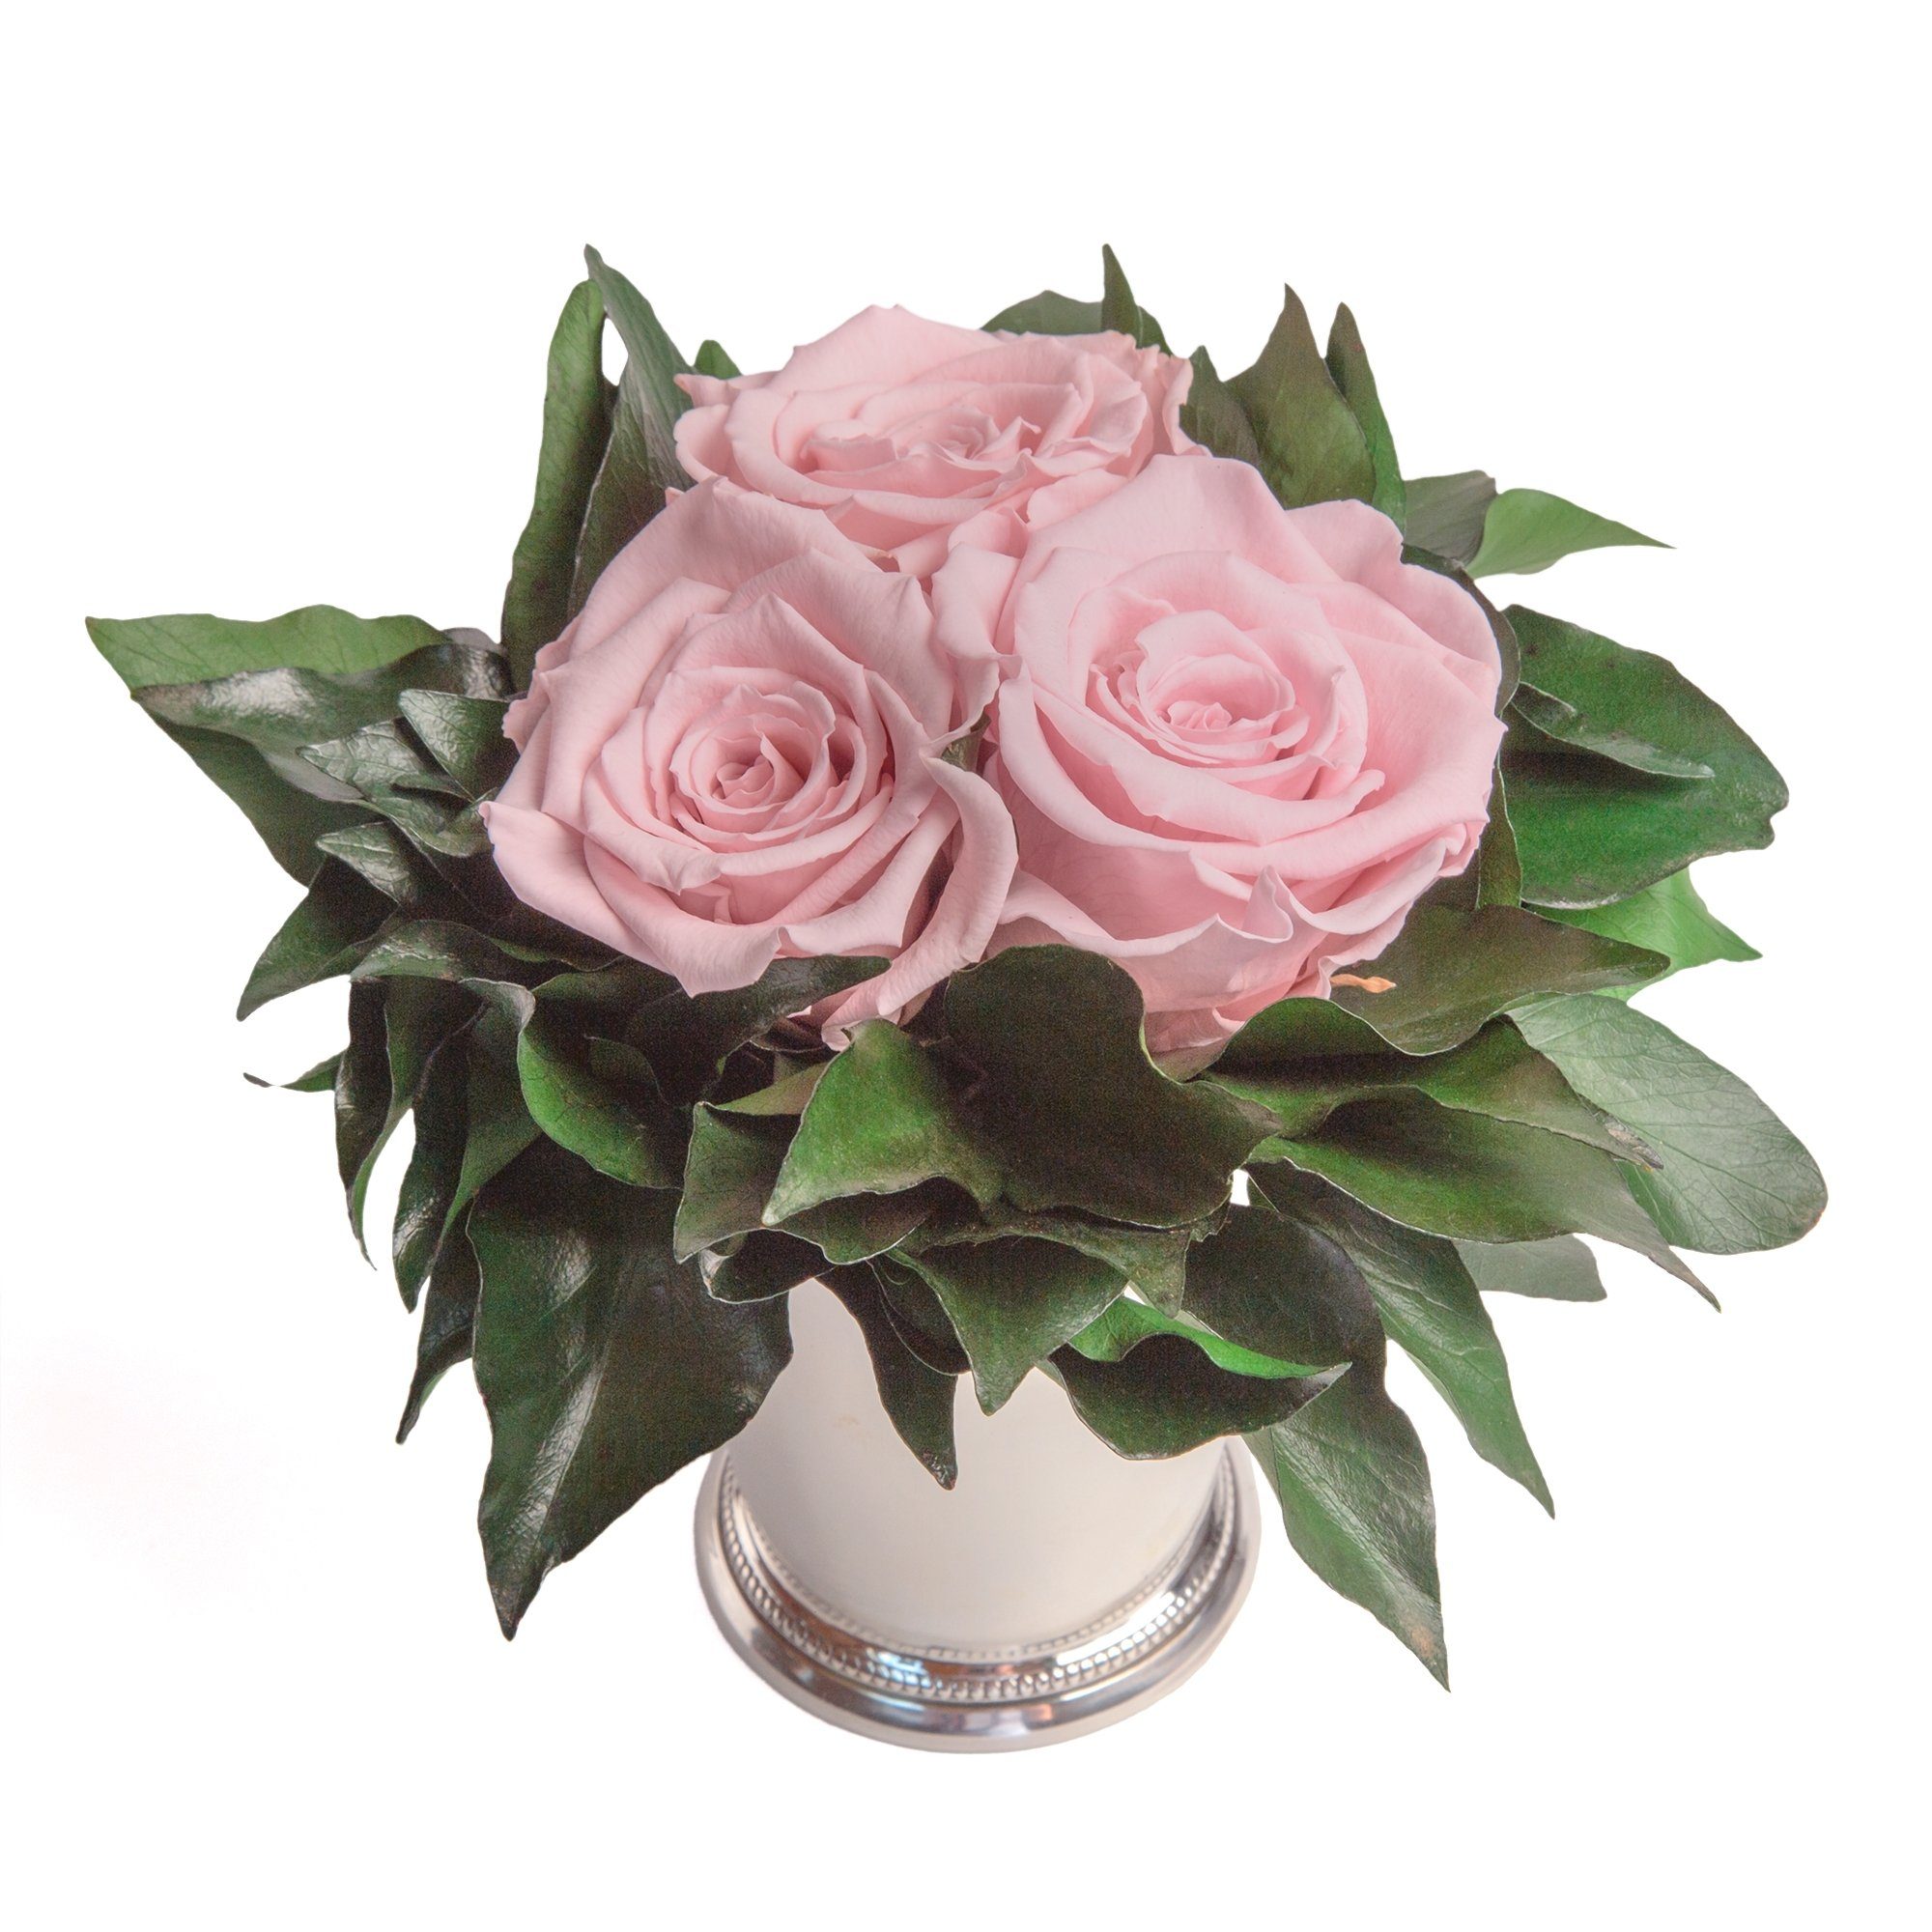 Kunstorchidee 3 Infinity Rosen silberfarbene Rosa 15 cm, Deko haltbar Blumenstrauß zu Wohnzimmer Rose Heidelberg, Rose, Vase SCHULZ ROSEMARIE bis Höhe Jahre 3